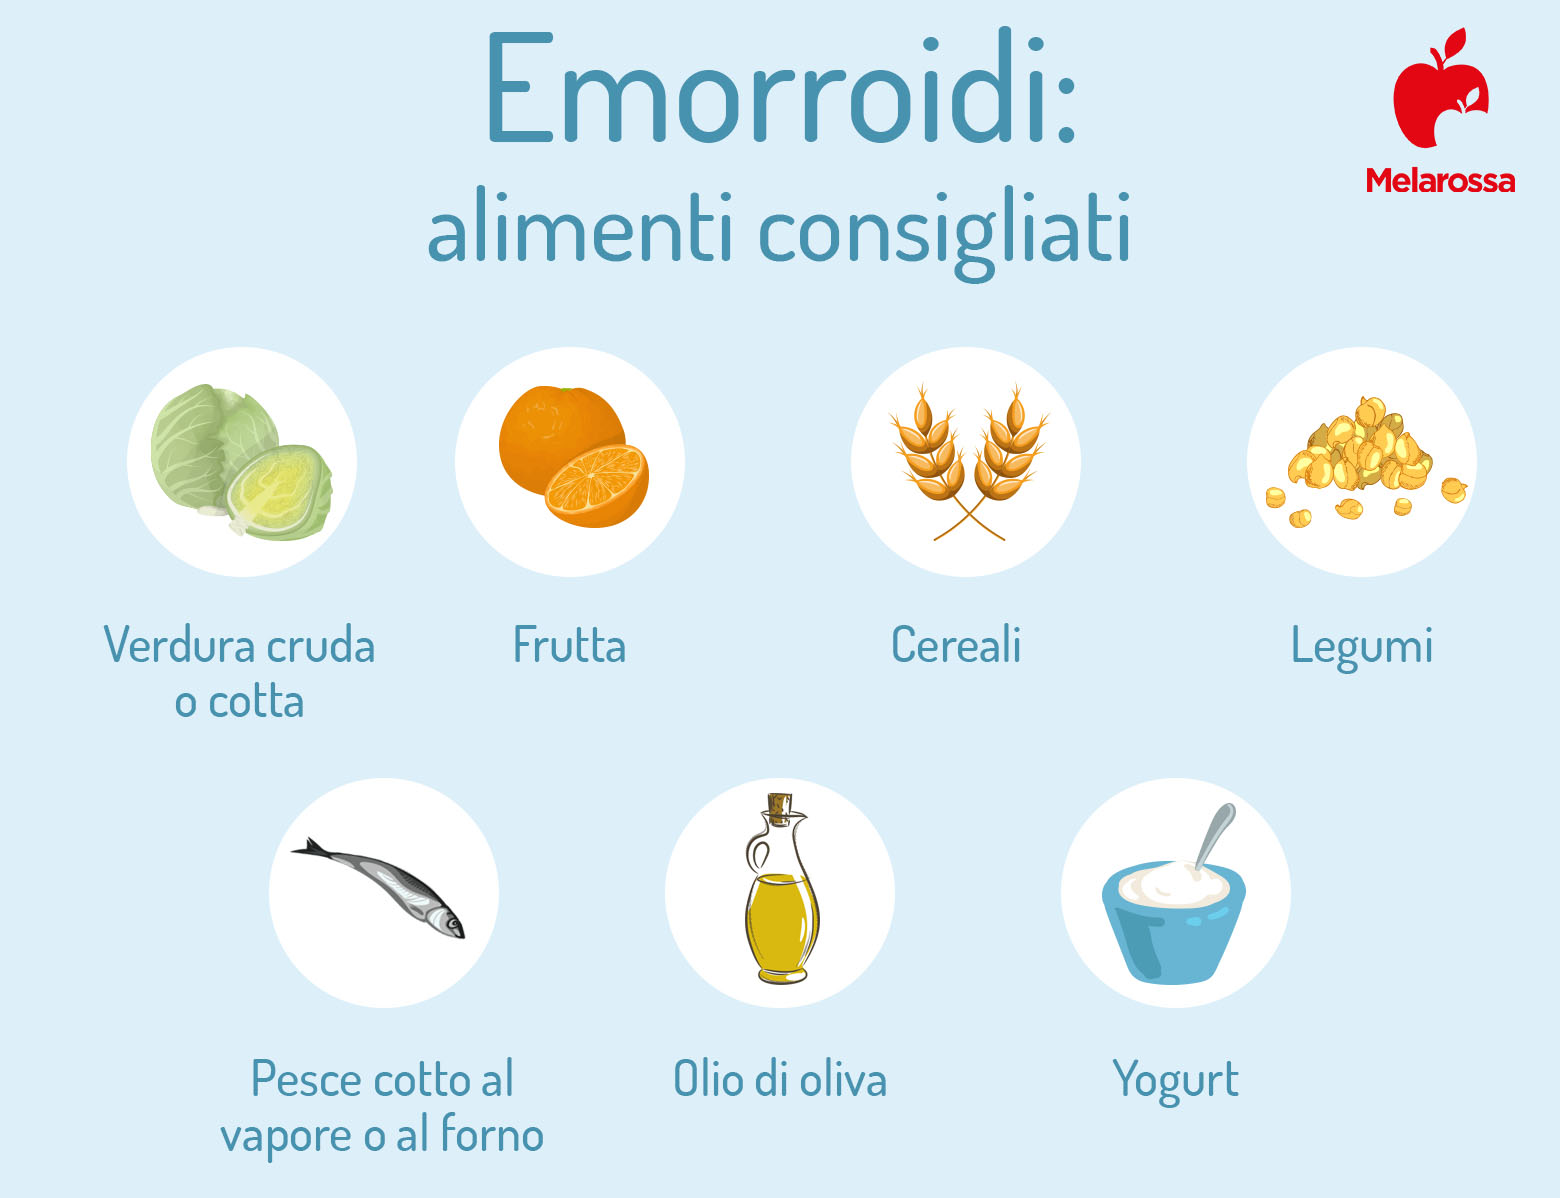 emorroidi: dieta e alimenti consigliati 